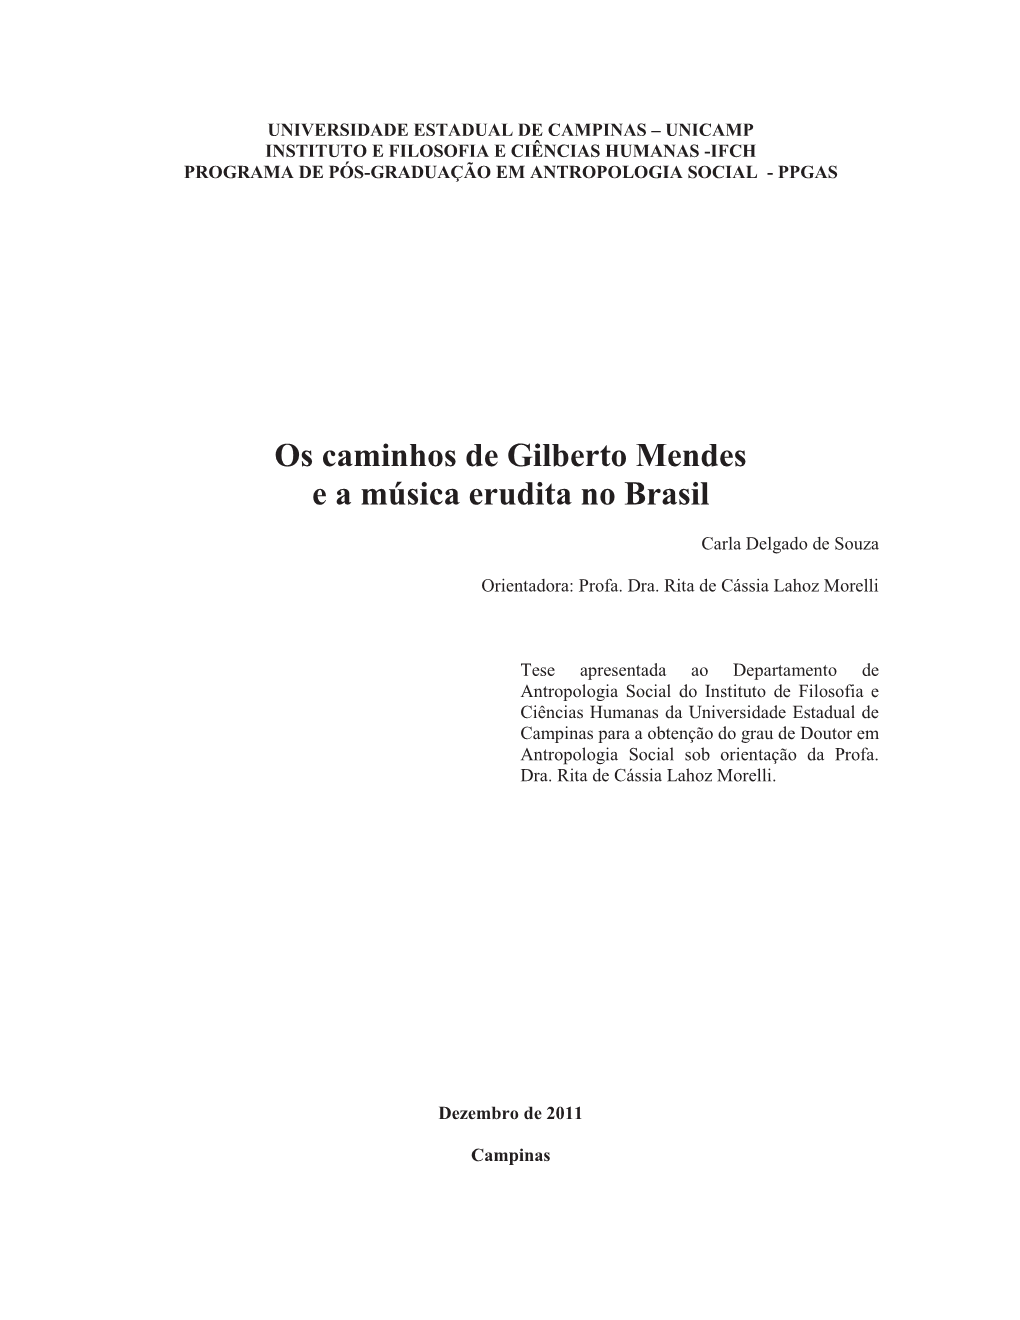 Os Caminhos De Gilberto Mendes E a Música Erudita No Brasil